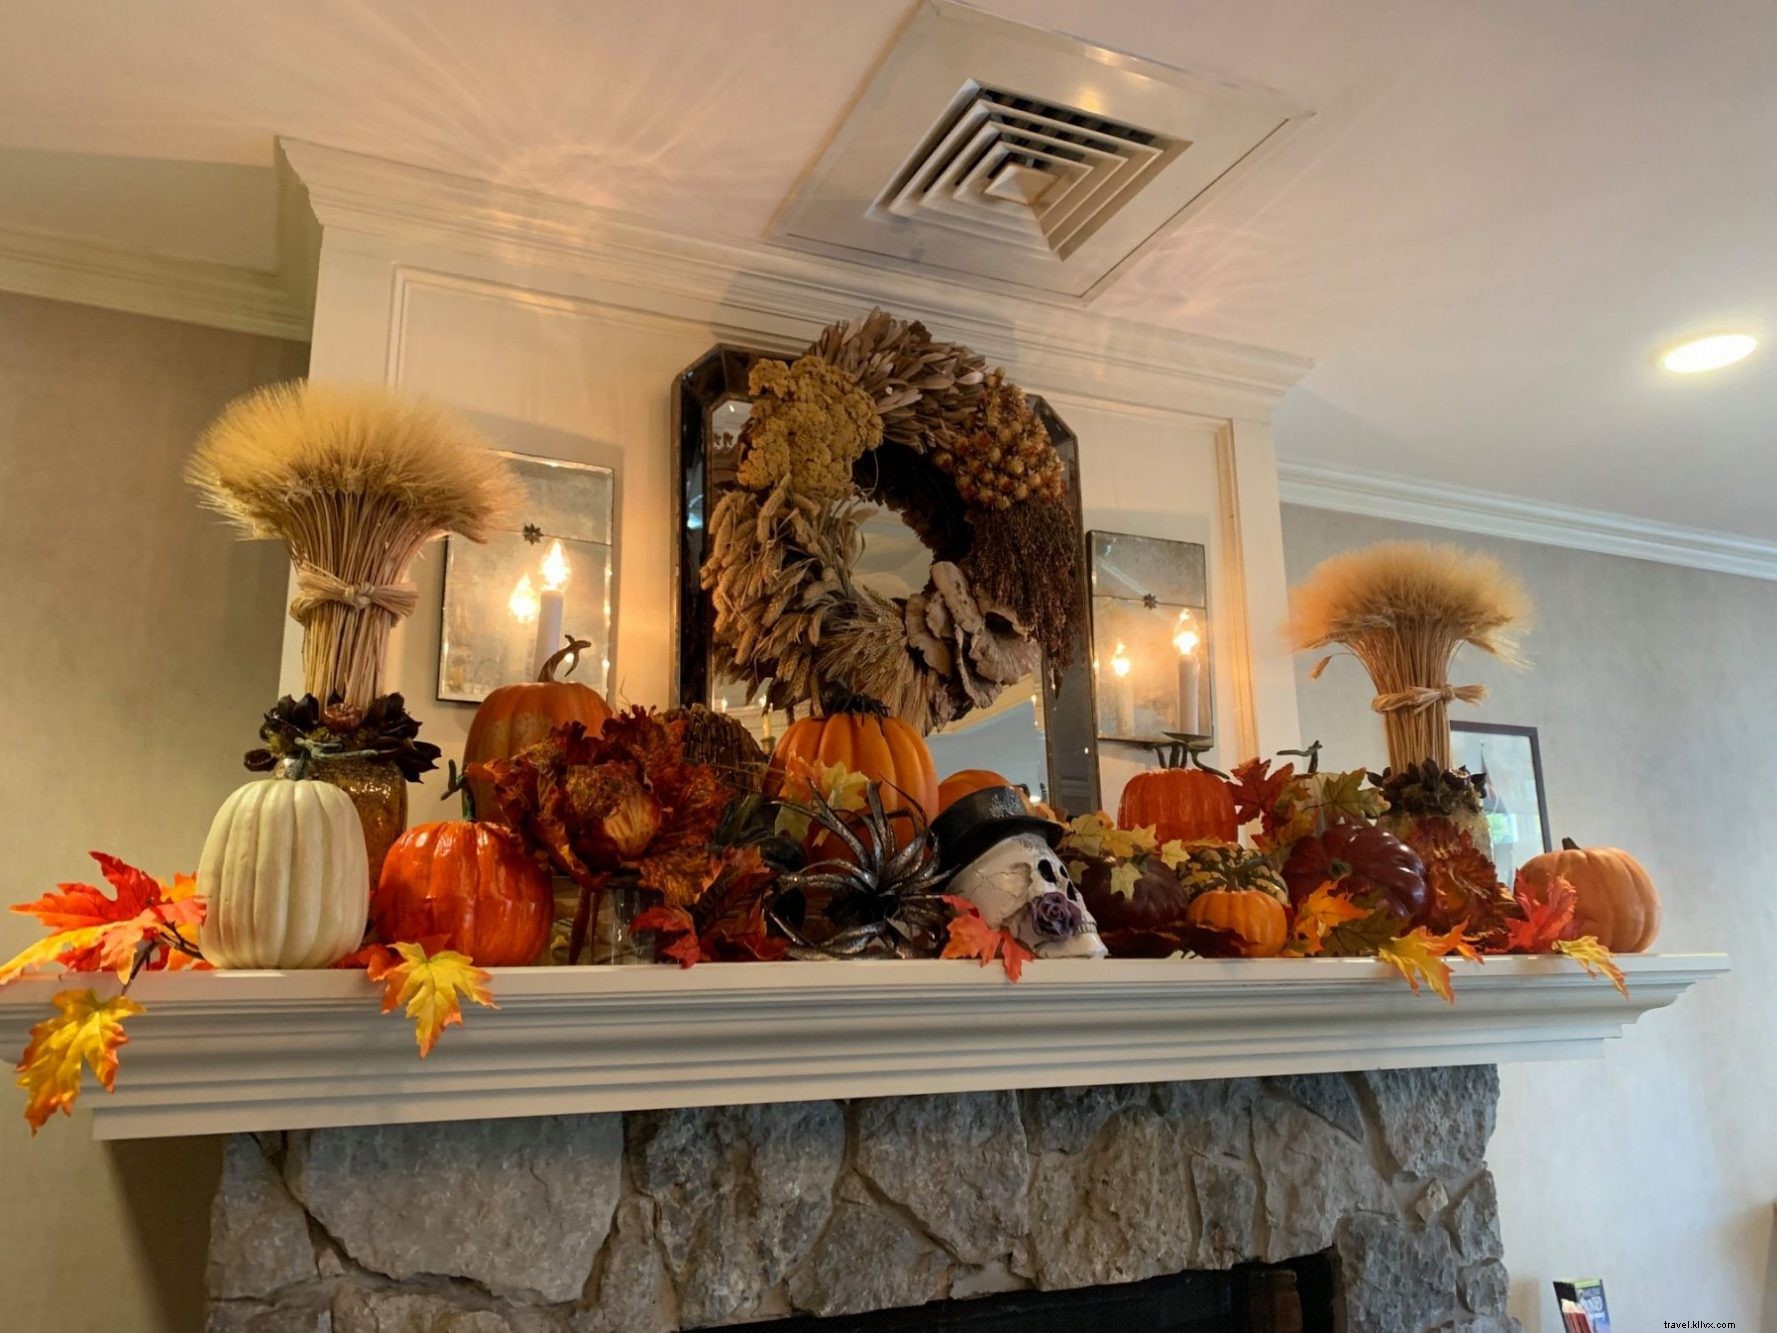 Festeggia Halloween tutto il mese al Salem Waterfront Hotel &Suites a Salem, Massachusetts 